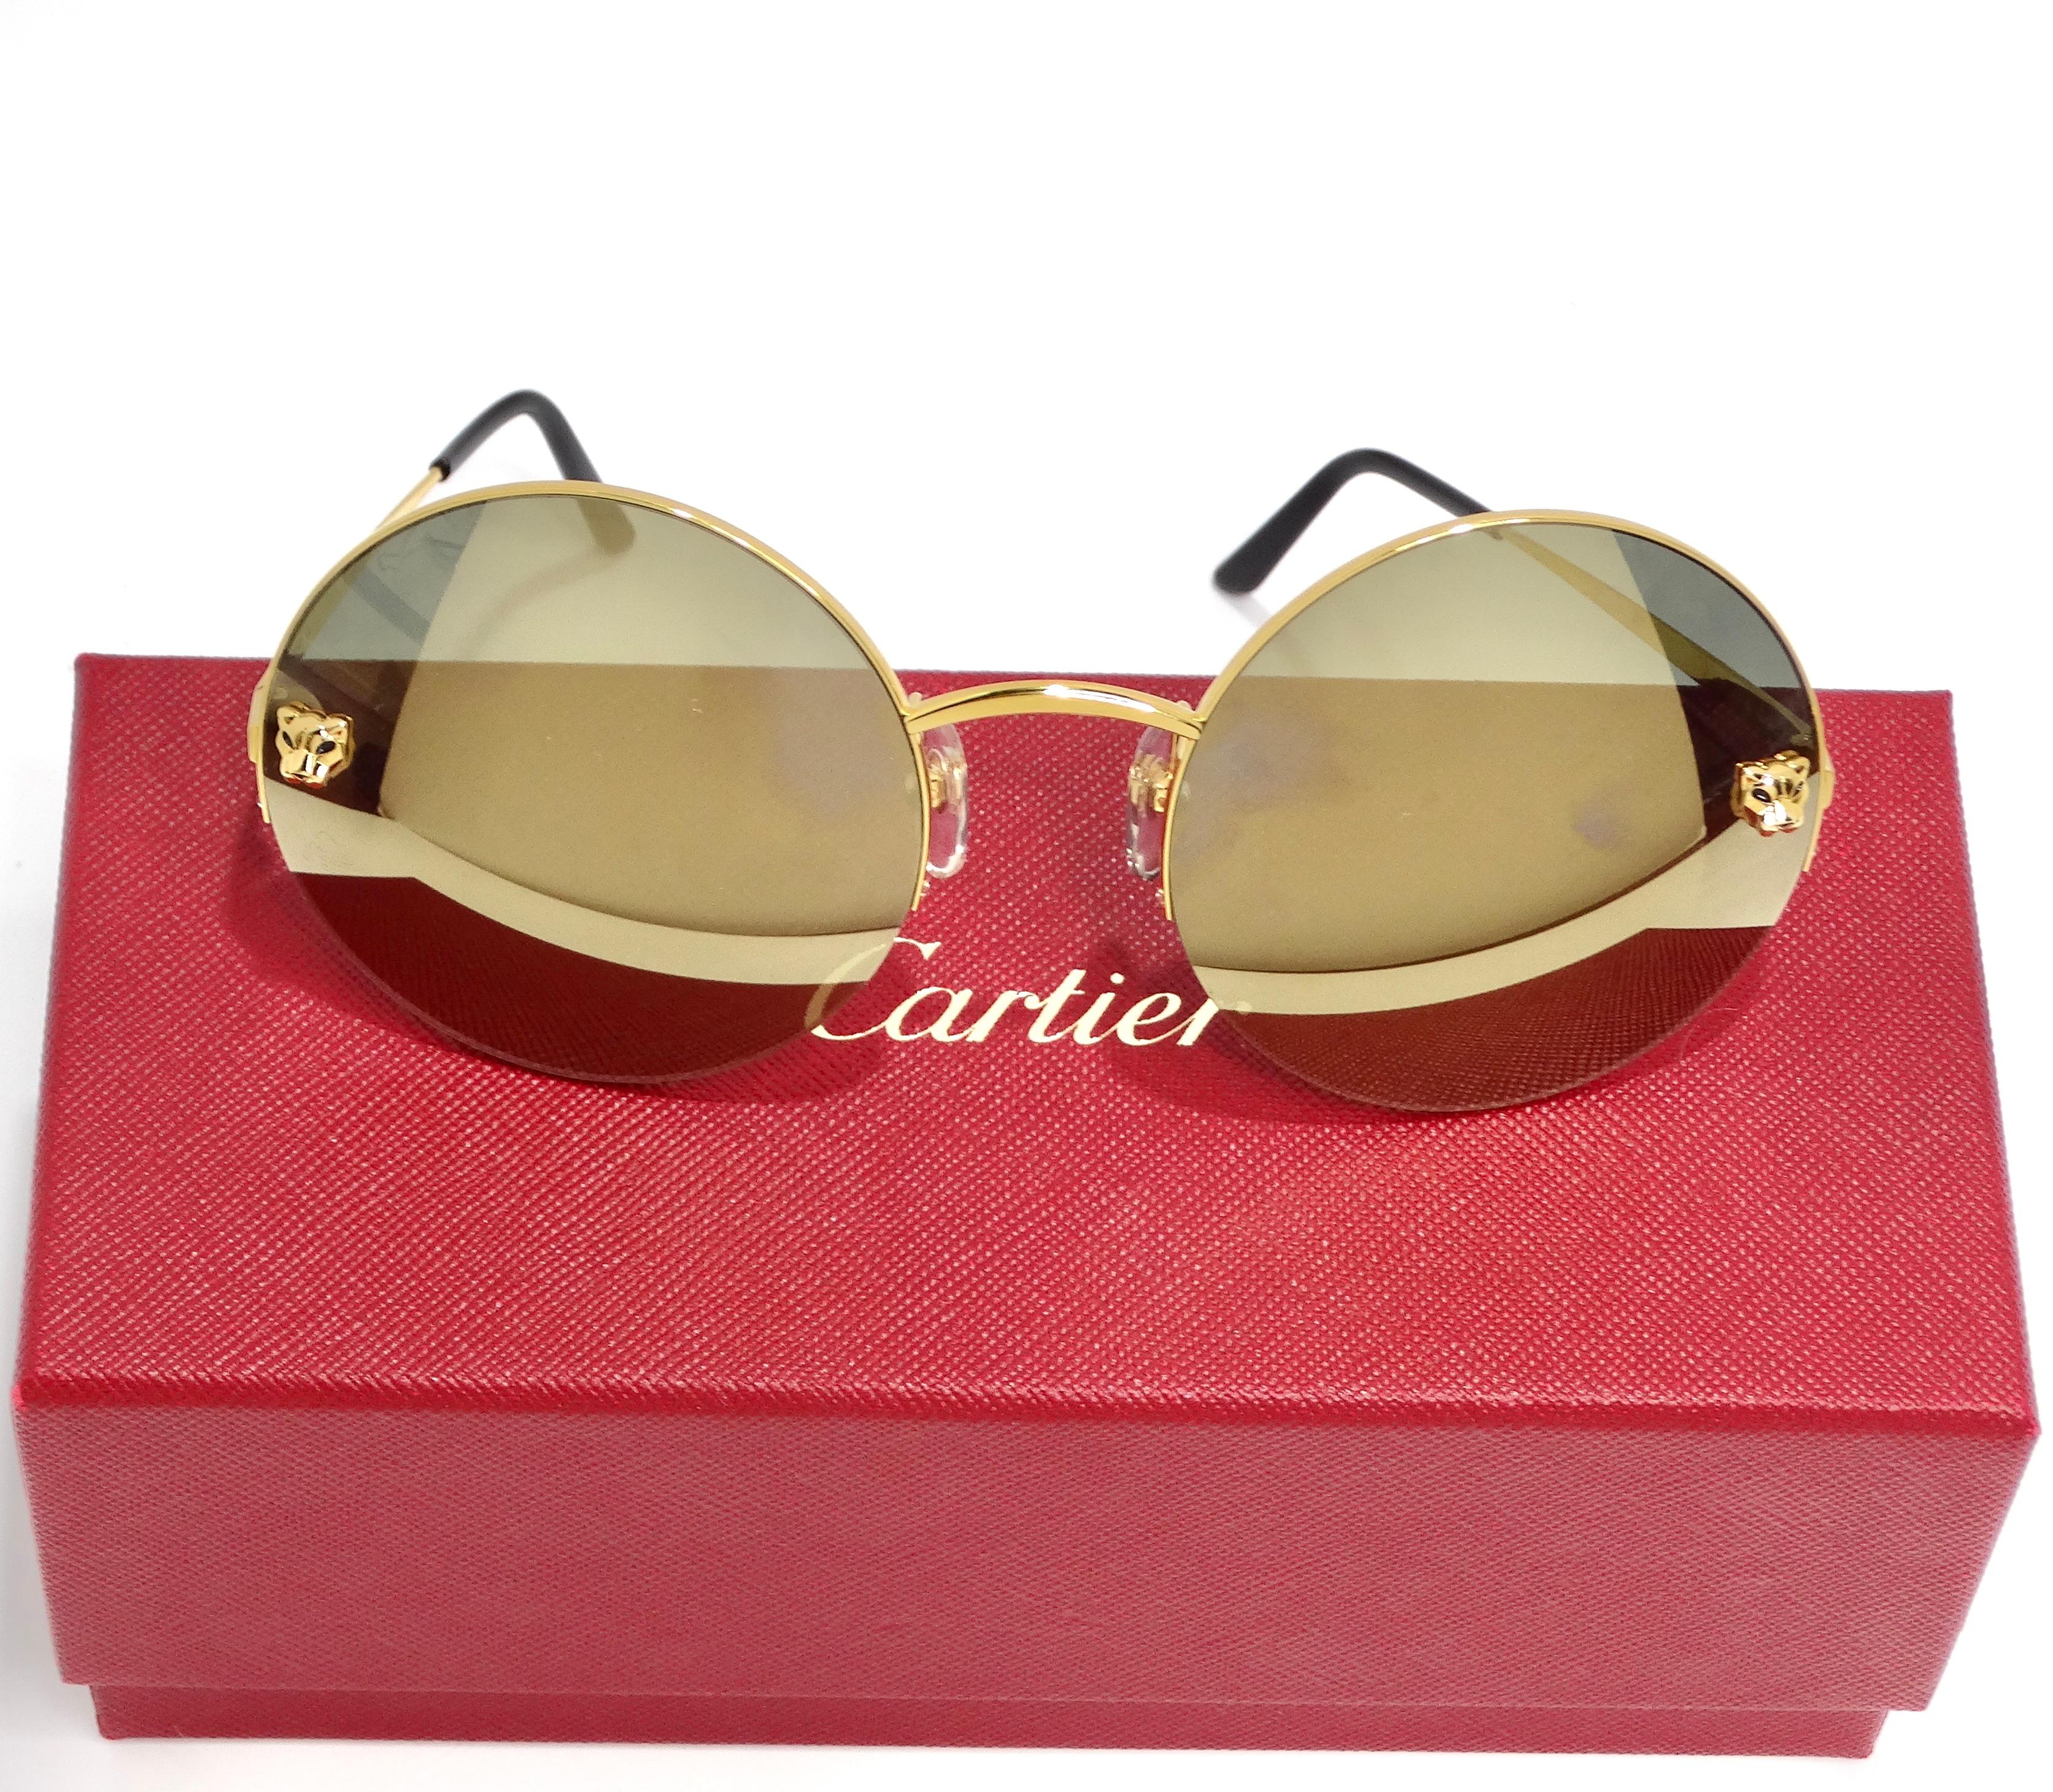 Werten Sie Ihre Brillenkollektion mit dieser exquisiten runden Cartier Panthère Sonnenbrille in Goldton auf. Diese mit viel Liebe zum Detail gefertigte Sonnenbrille strahlt Luxus und Raffinesse aus.

Das atemberaubende runde Rahmendesign wird durch